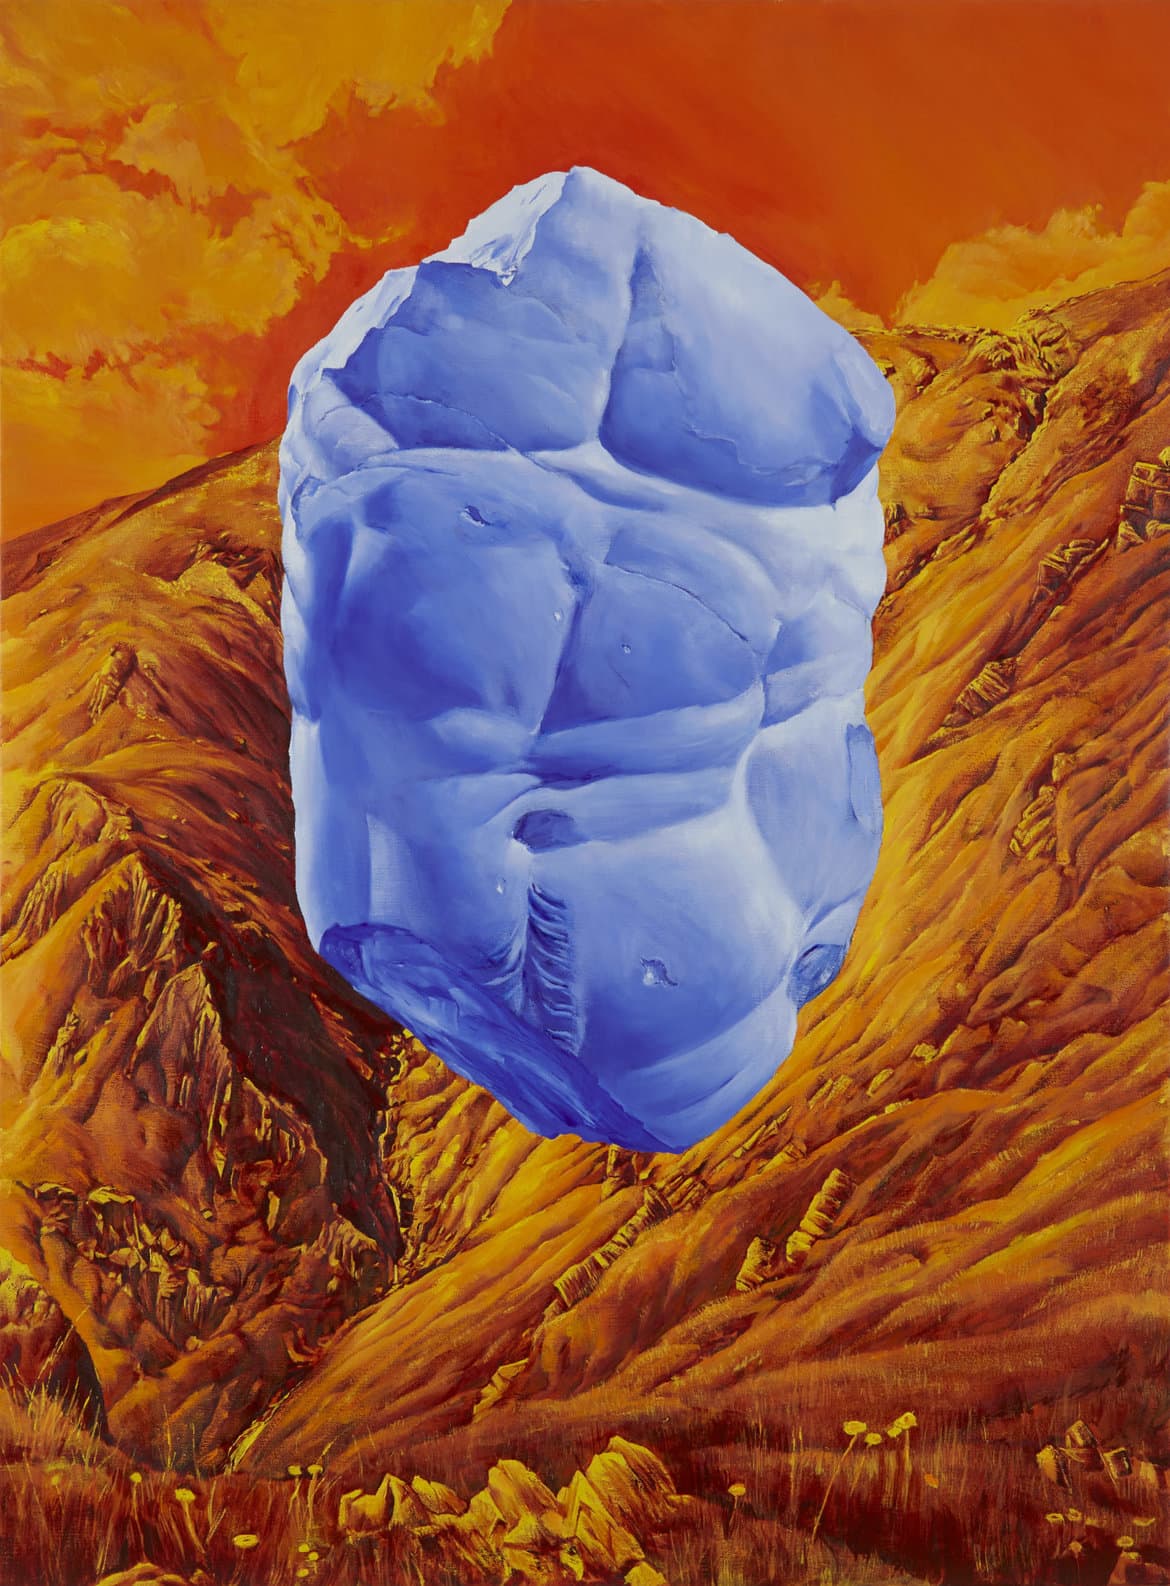 ‘Nessus in cadmium’, 2022, oil on linen, 92 x 122 cm